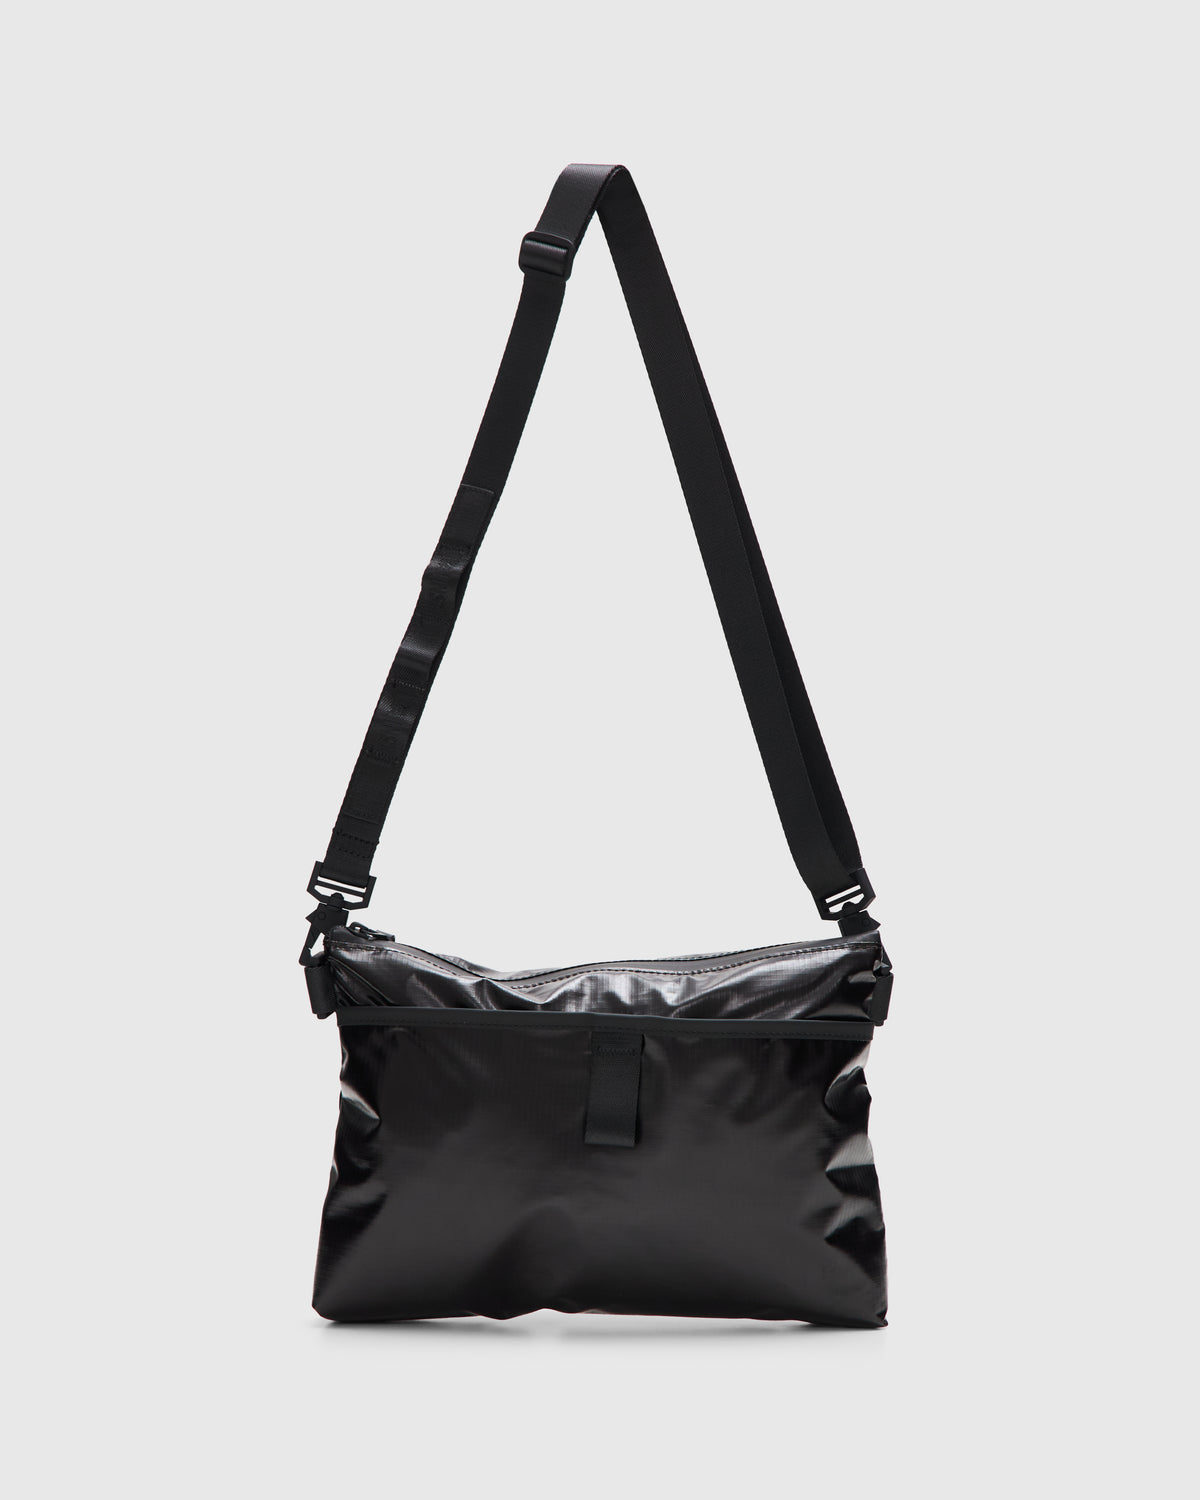 Sibu Musette Bag in Black